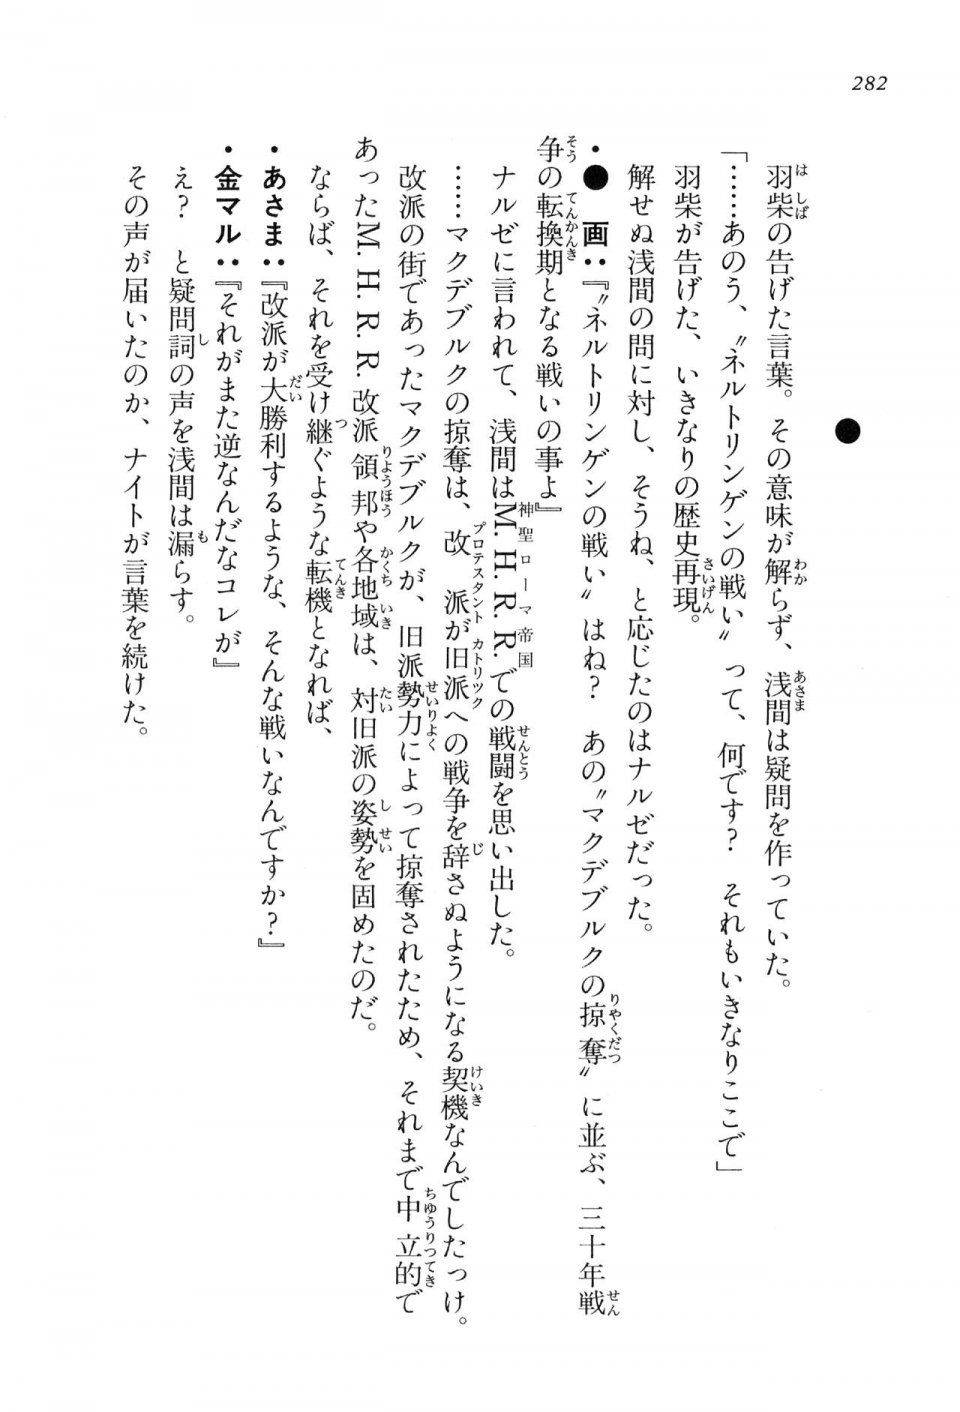 Kyoukai Senjou no Horizon LN Vol 16(7A) - Photo #282